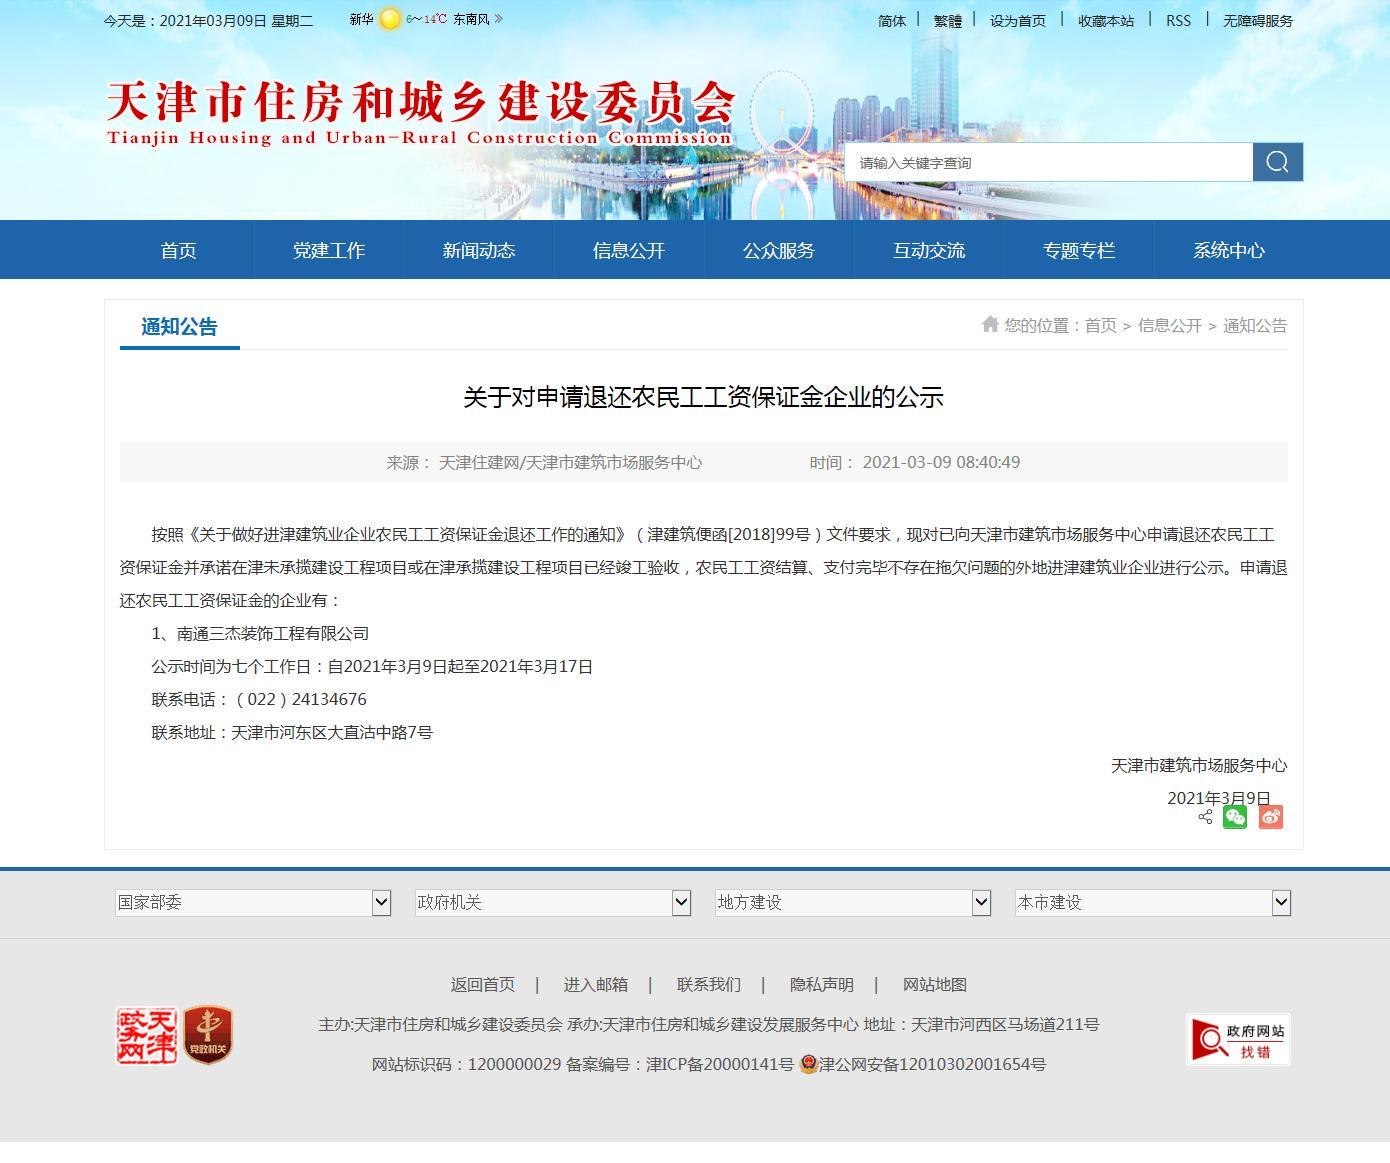 南通三杰装饰公司向天津市建筑市场服务中心申请退还农民工工资保证金 